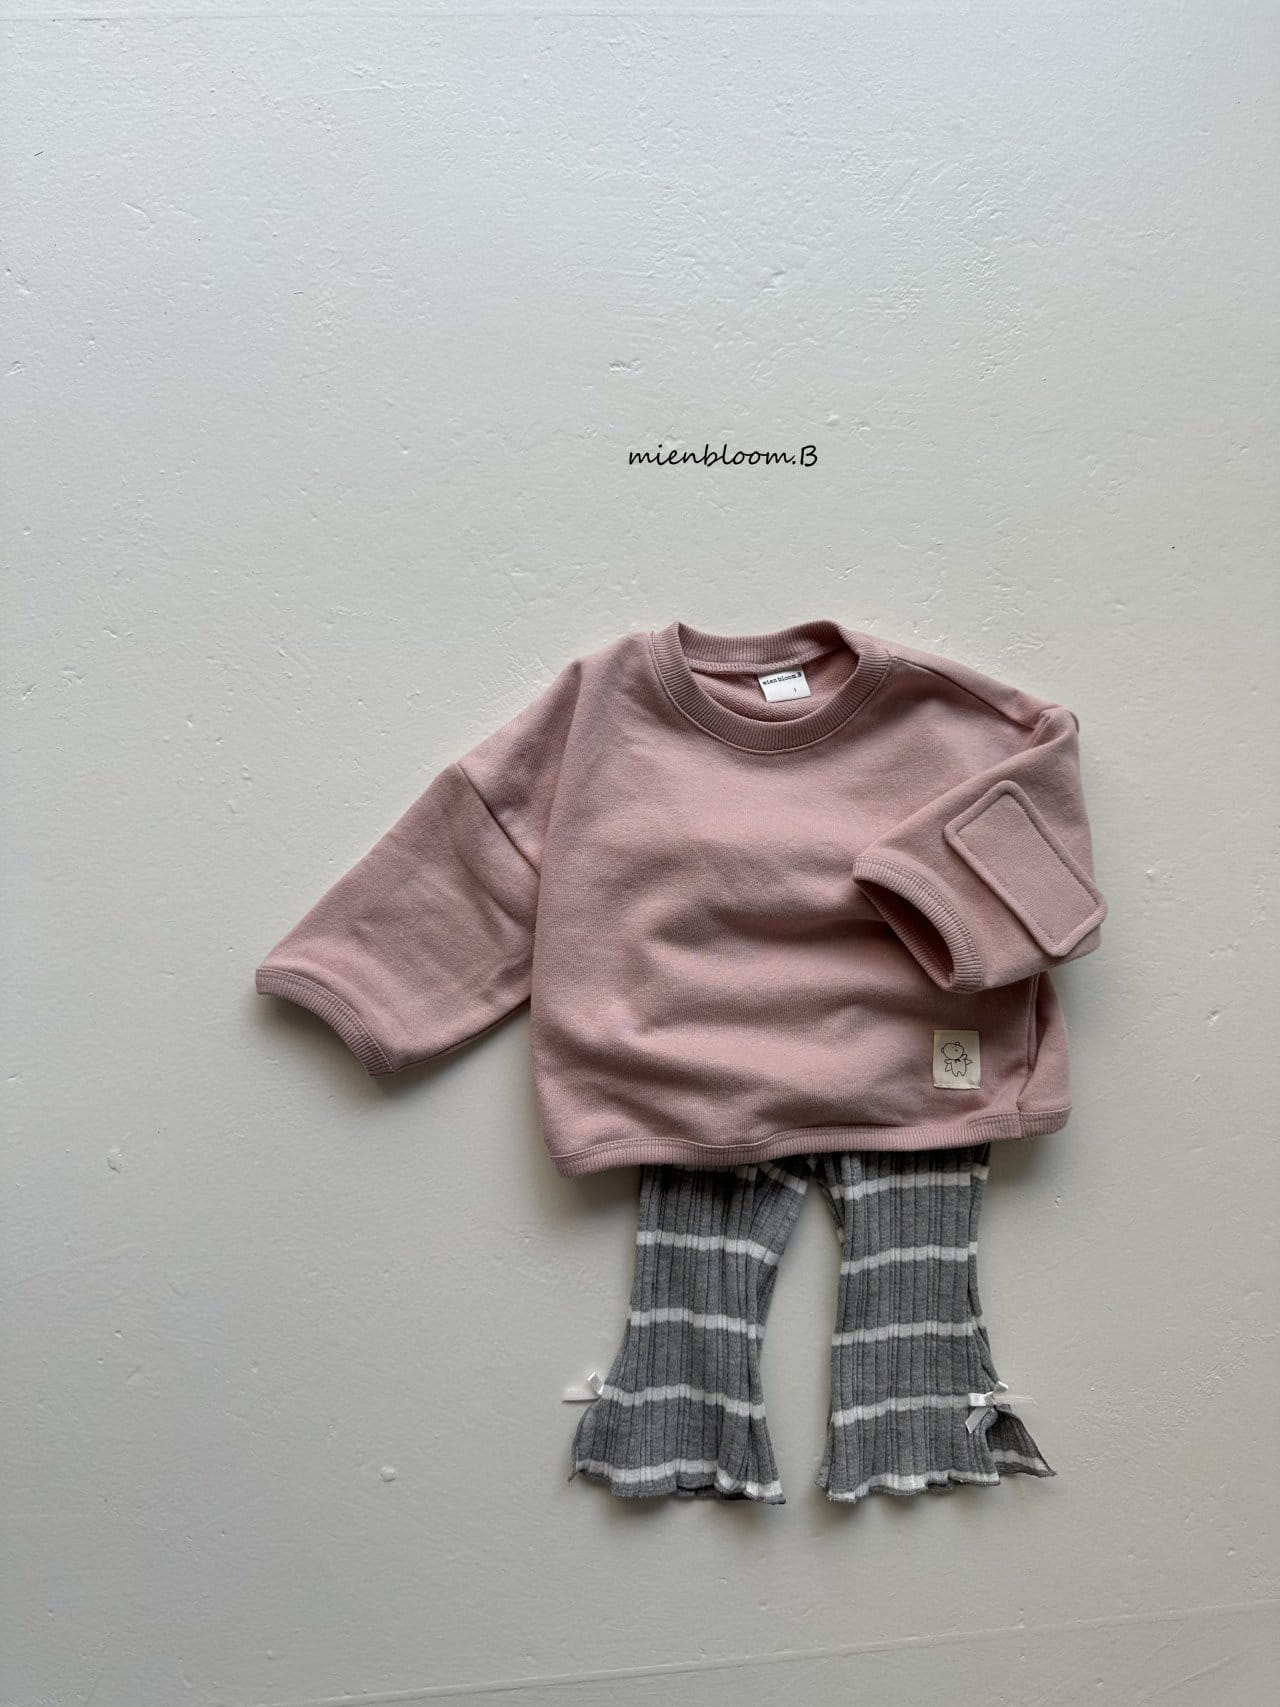 Mienbloom B - Korean Baby Fashion - #babyfashion - Bebe Square Bbang Sweatshirt - 5